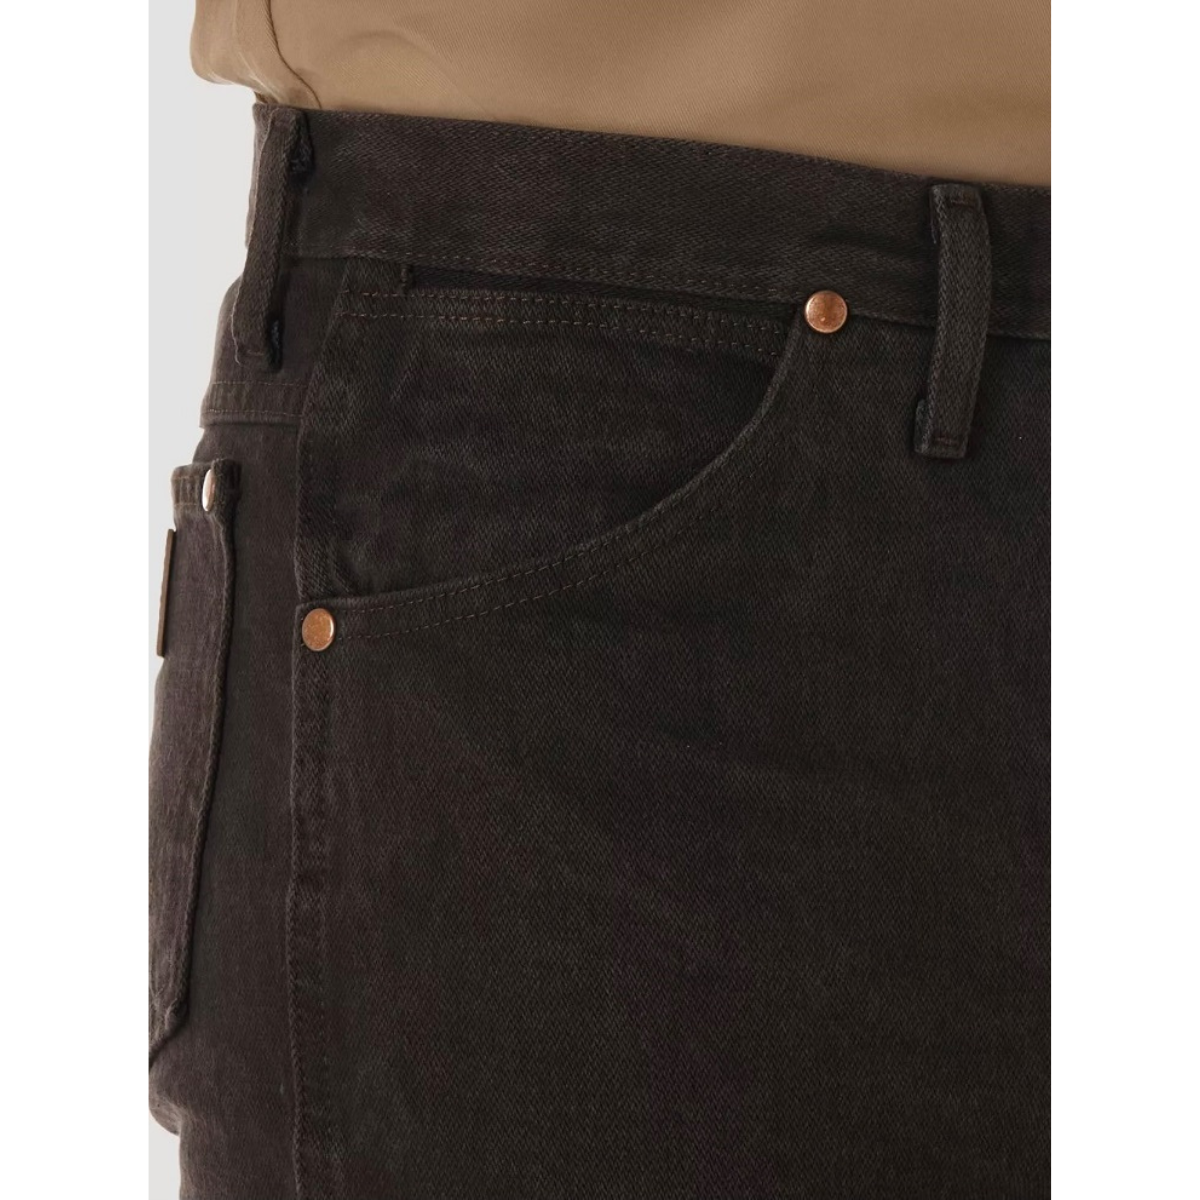 Pantalón Wrangler Para Hombre Corte Vaquero Slim Fit 936KCL